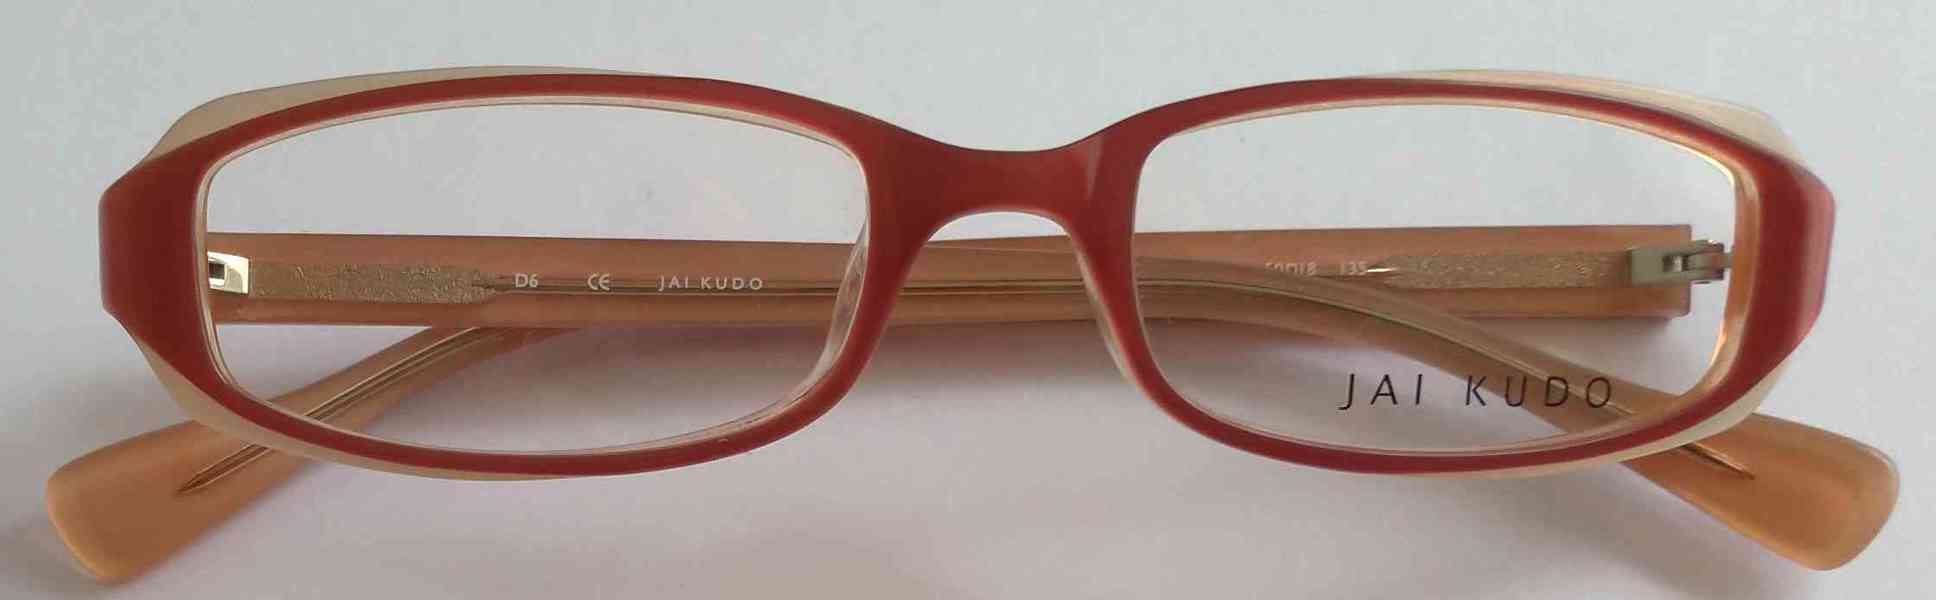 JAI KUDO 1717 P09 dámské brýlové obruby 50-18-135 MOC:2600Kč - foto 8